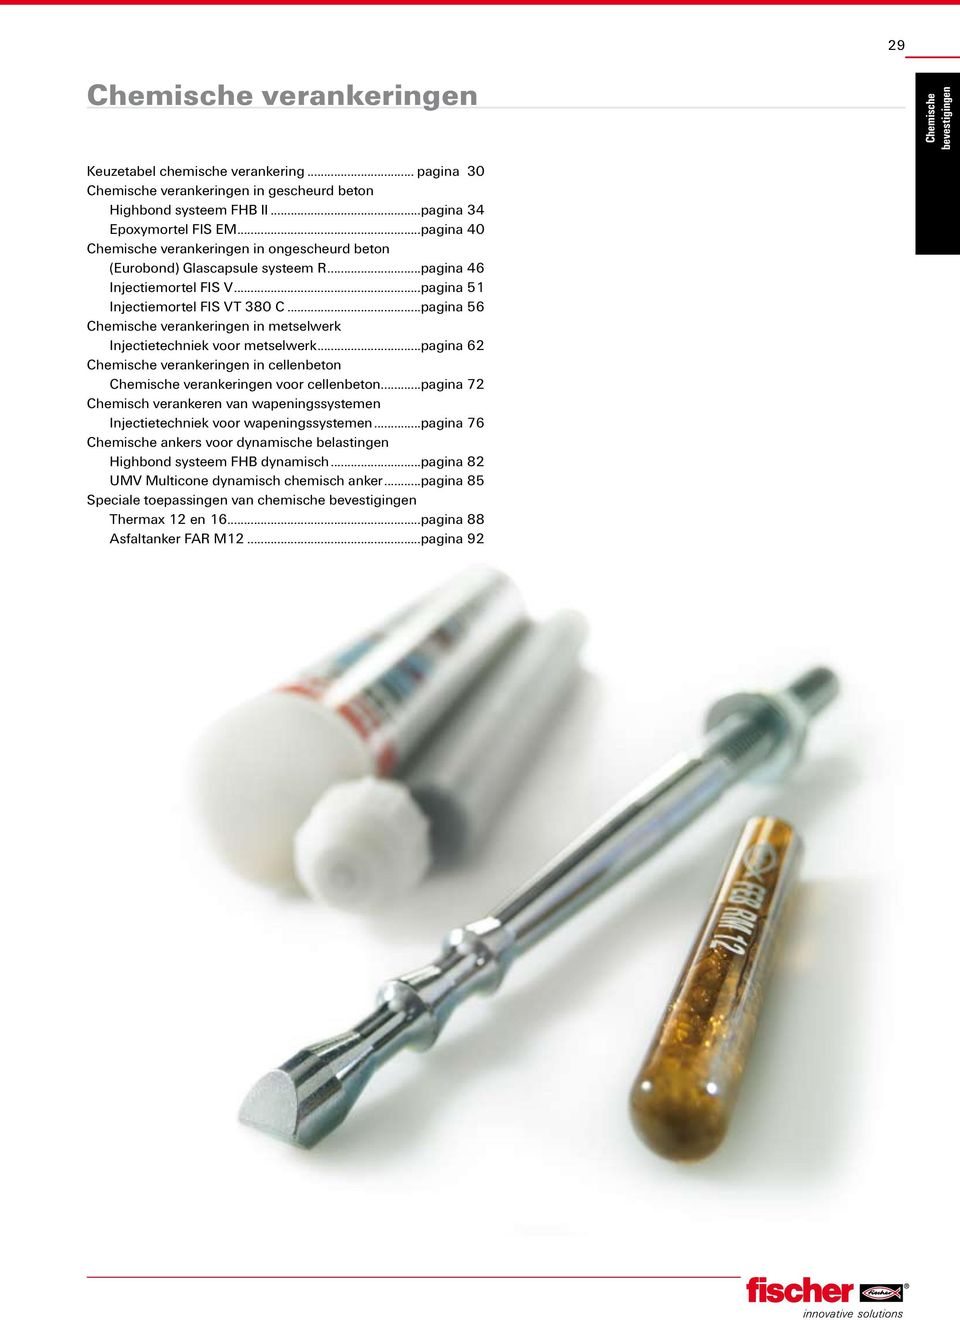 ..pagina 56 Chemische verankeringen in metselwerk Injectietechniek voor metselwerk...pagina 62 Chemische verankeringen in cellenbeton Chemische verankeringen voor cellenbeton.